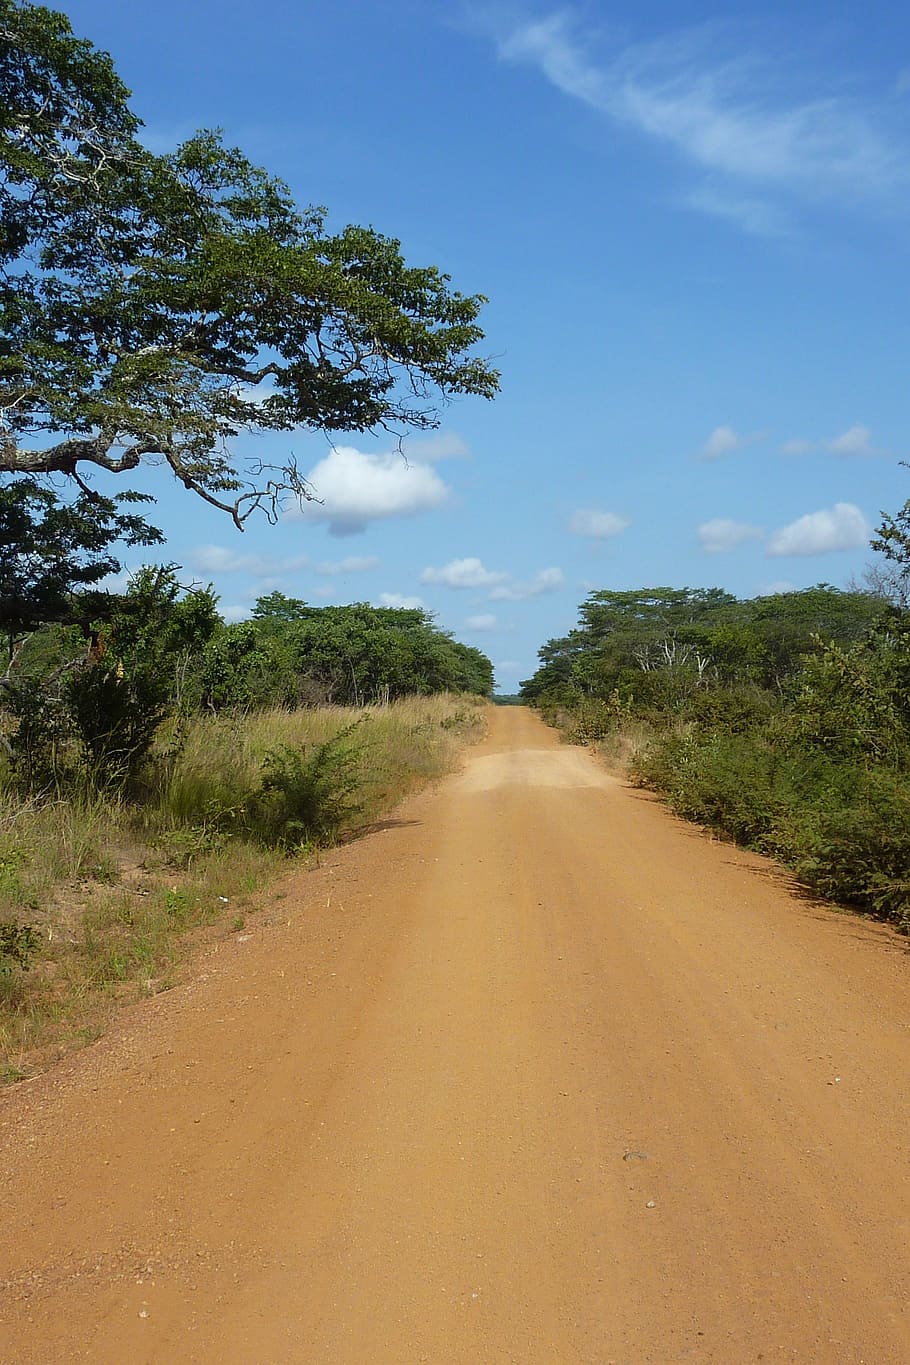 Tanzania, carretera, polvo, cielo, árbol, árboles, arena, el camino a seguir, dirección, planta